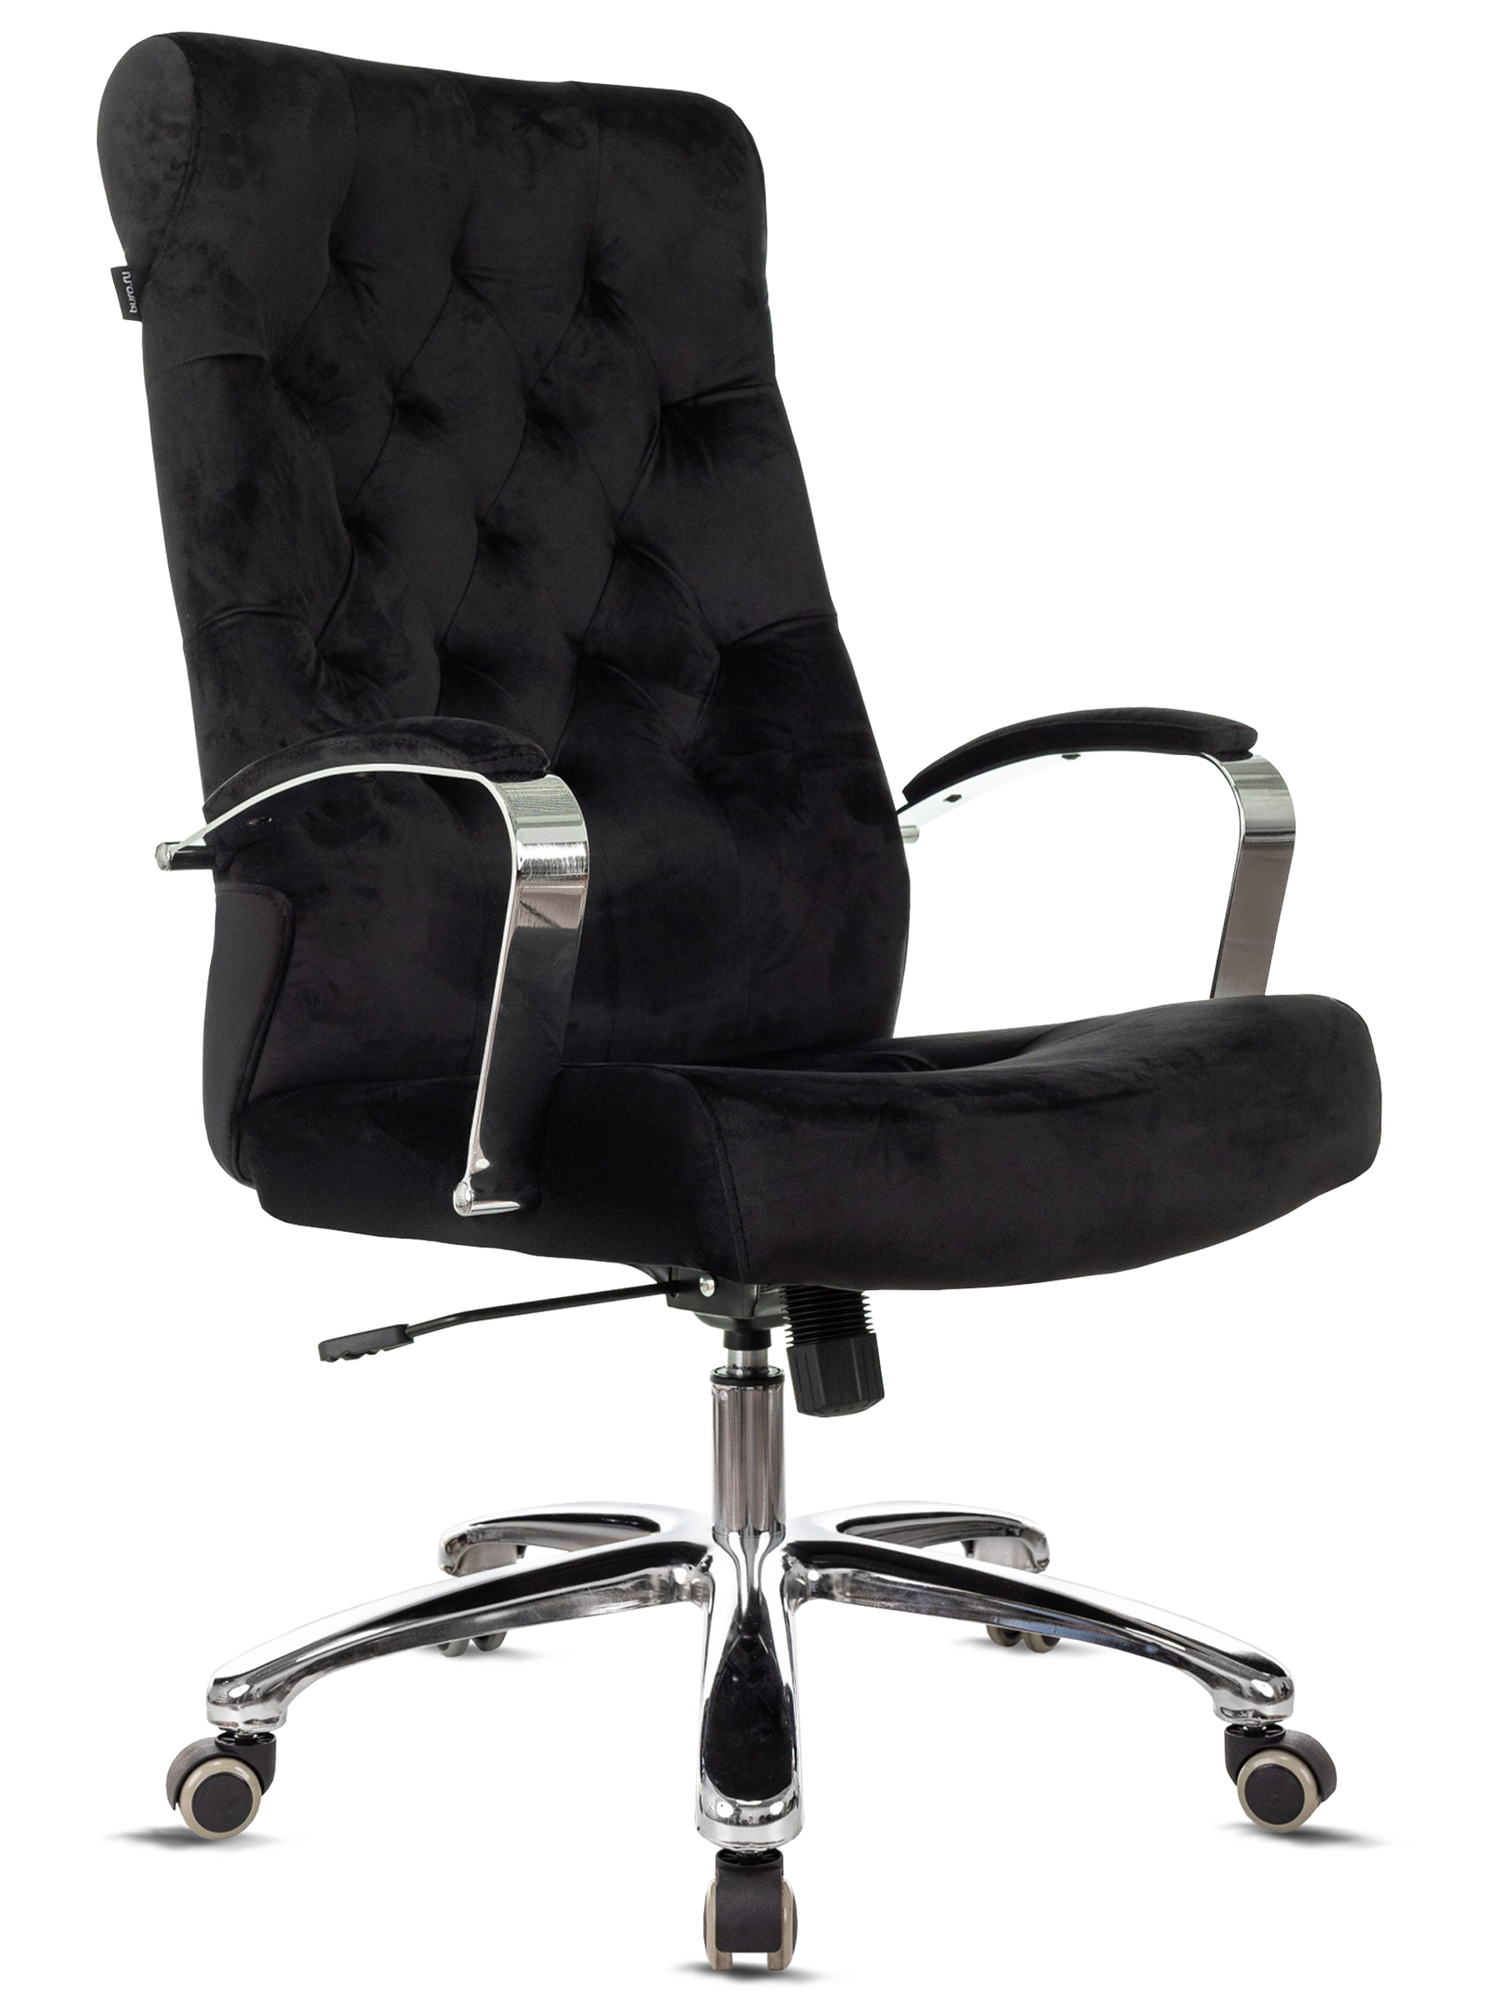 Кресло руководителя T-9928SL Fabric черный Italia Black крестов. металл хром / Компьютерное кресло для директора начальника менеджера